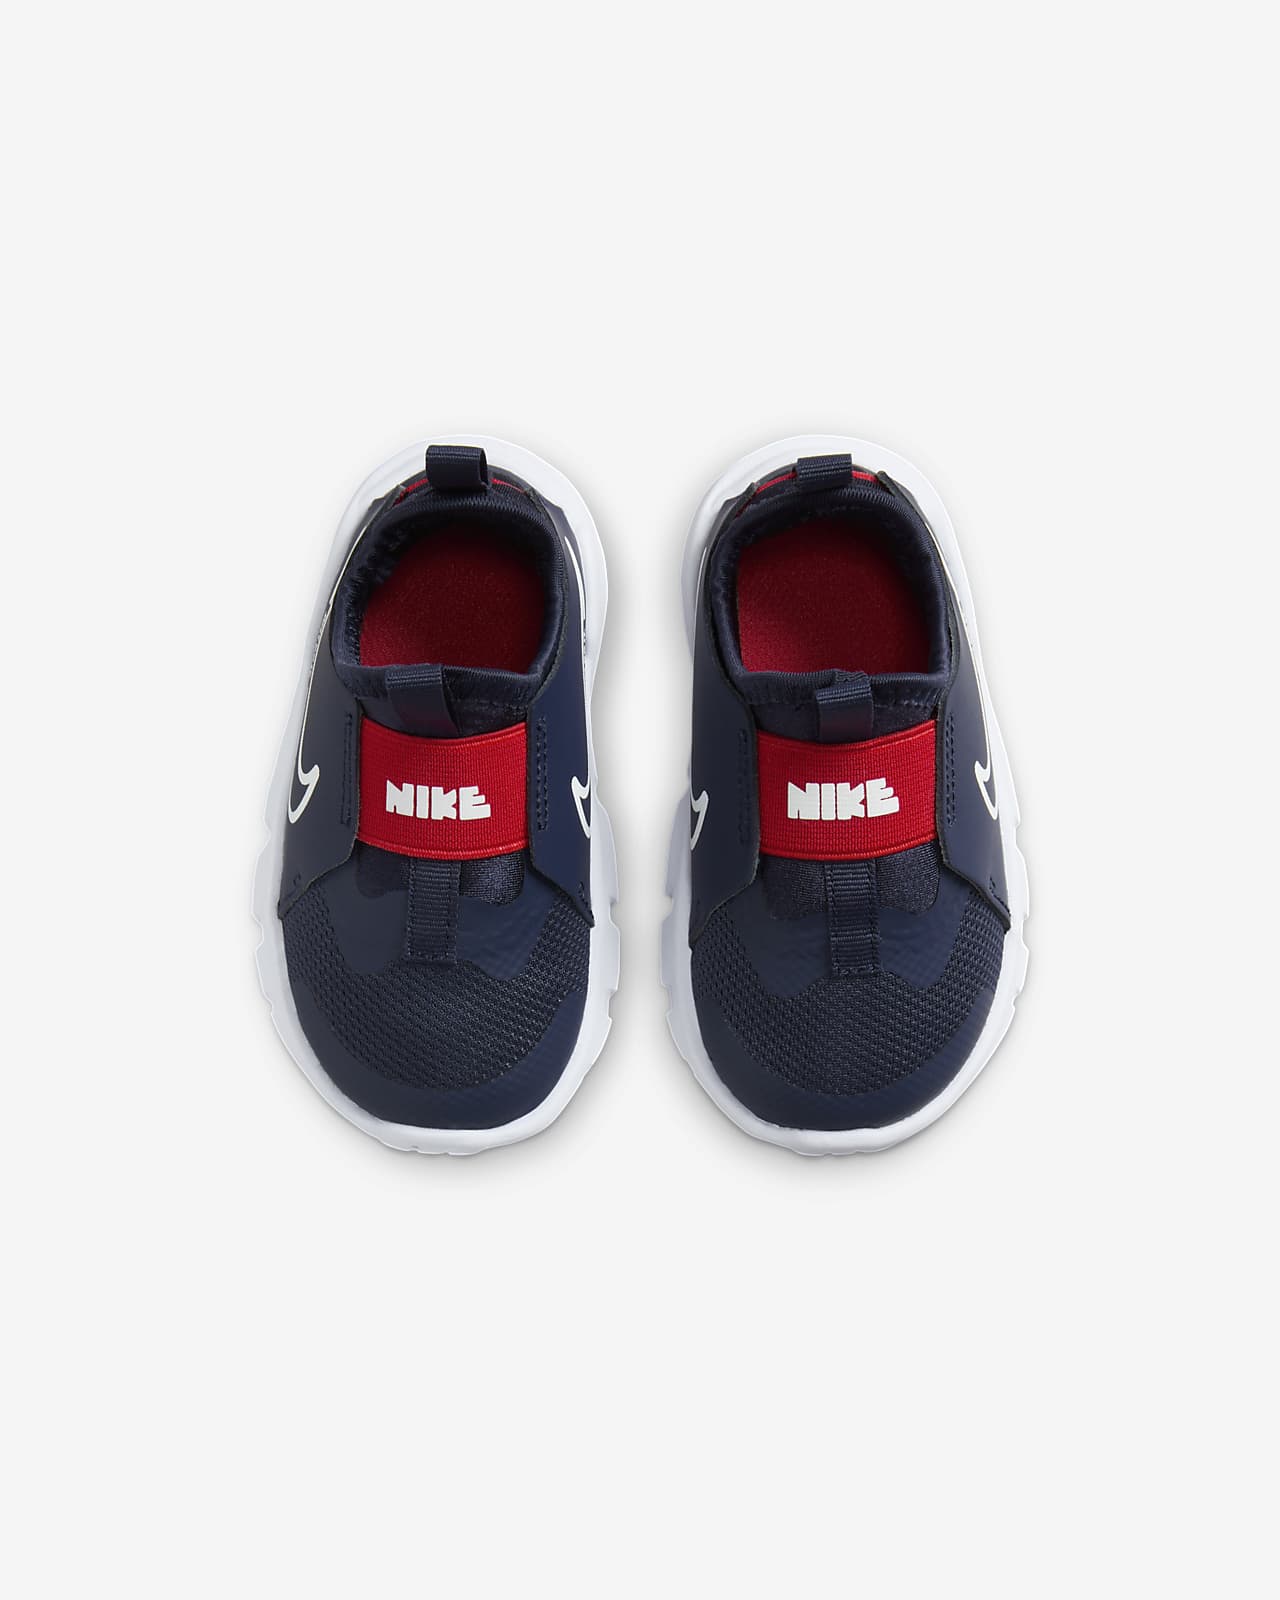 Baby/Toddler Shoes. Runner Nike 2 Flex